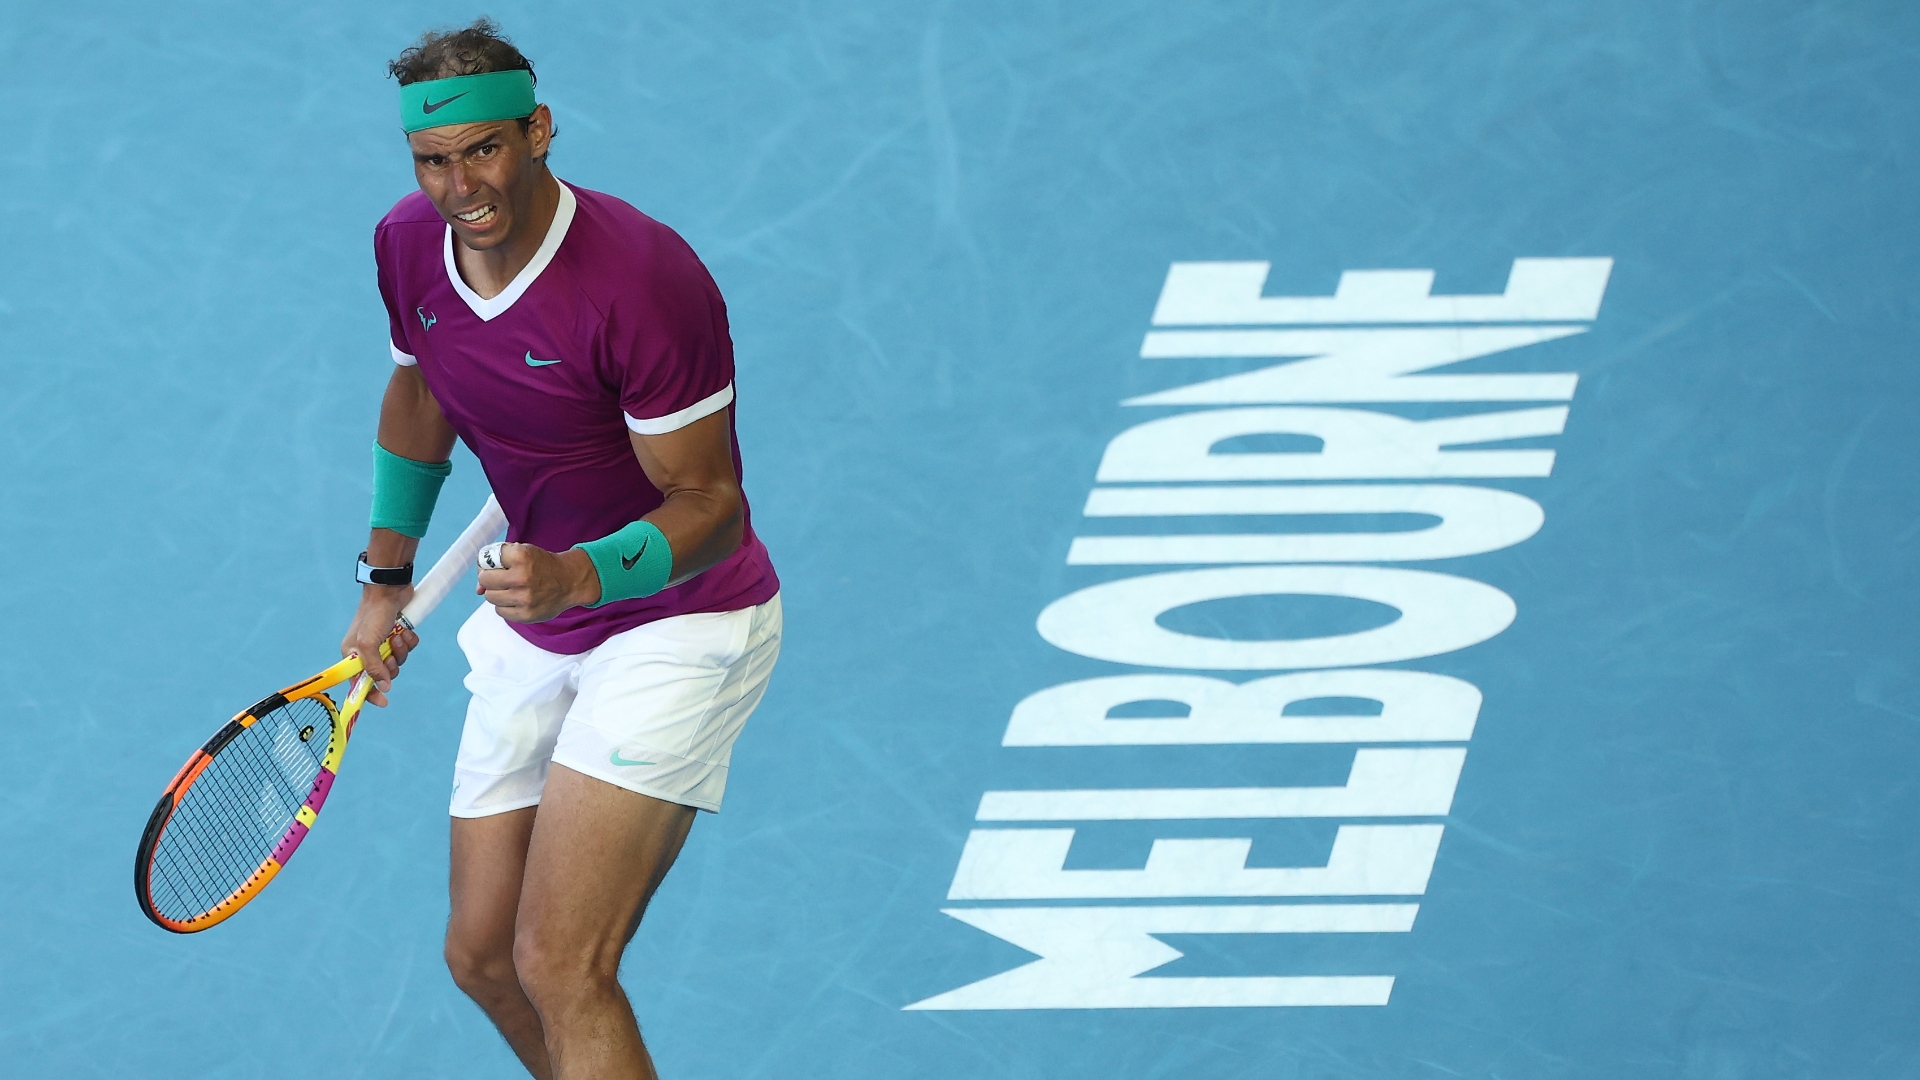 Nadal survives 5-set thriller, advances to Aussie Open semifinals